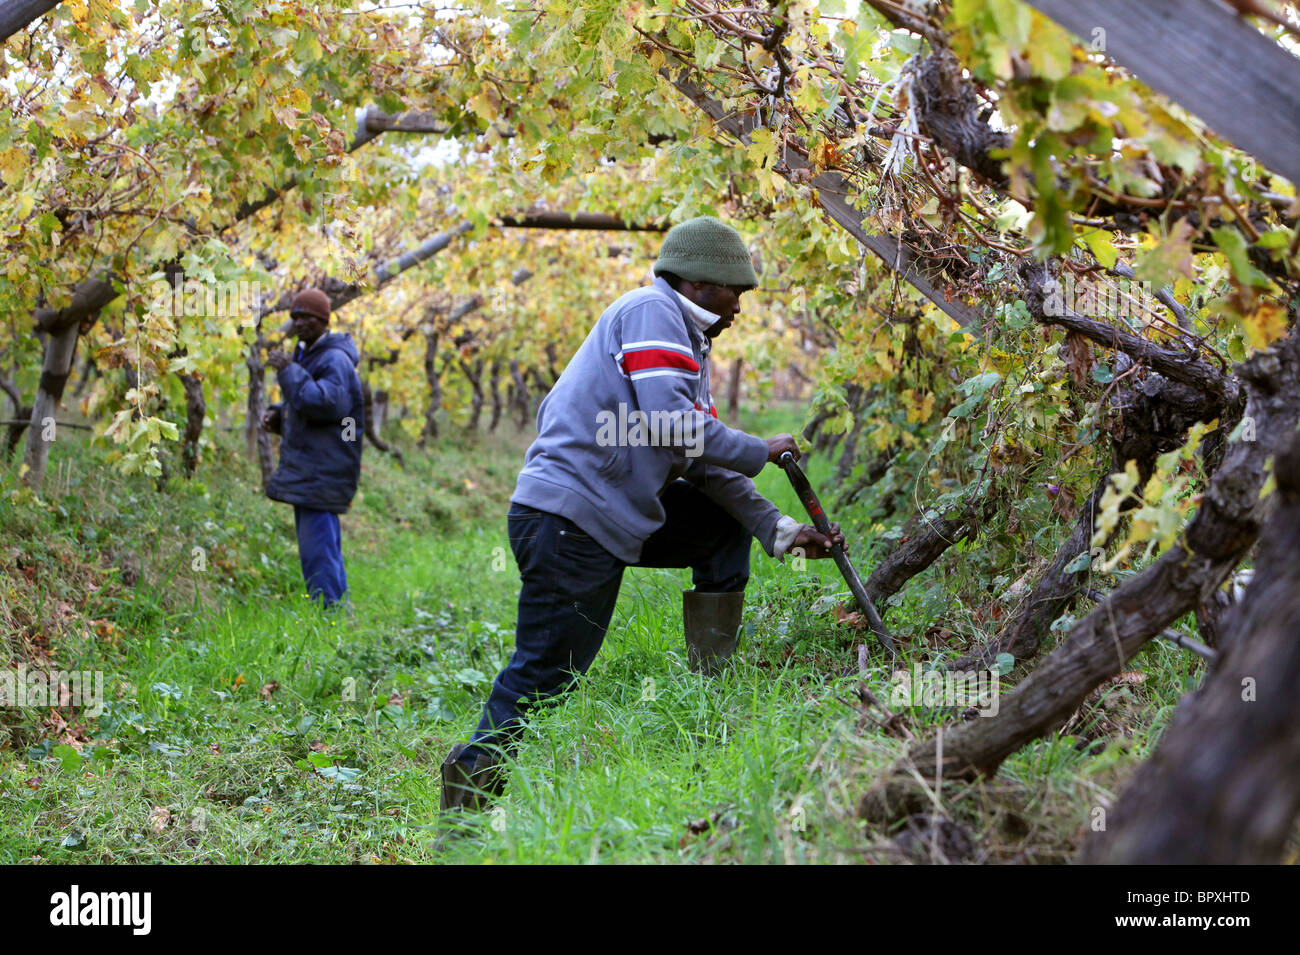 Afrique du Sud : les travailleurs dans un vignoble dans la région viticole de la Province du Cap occidental près de De Doorns, Hex , Valley Banque D'Images